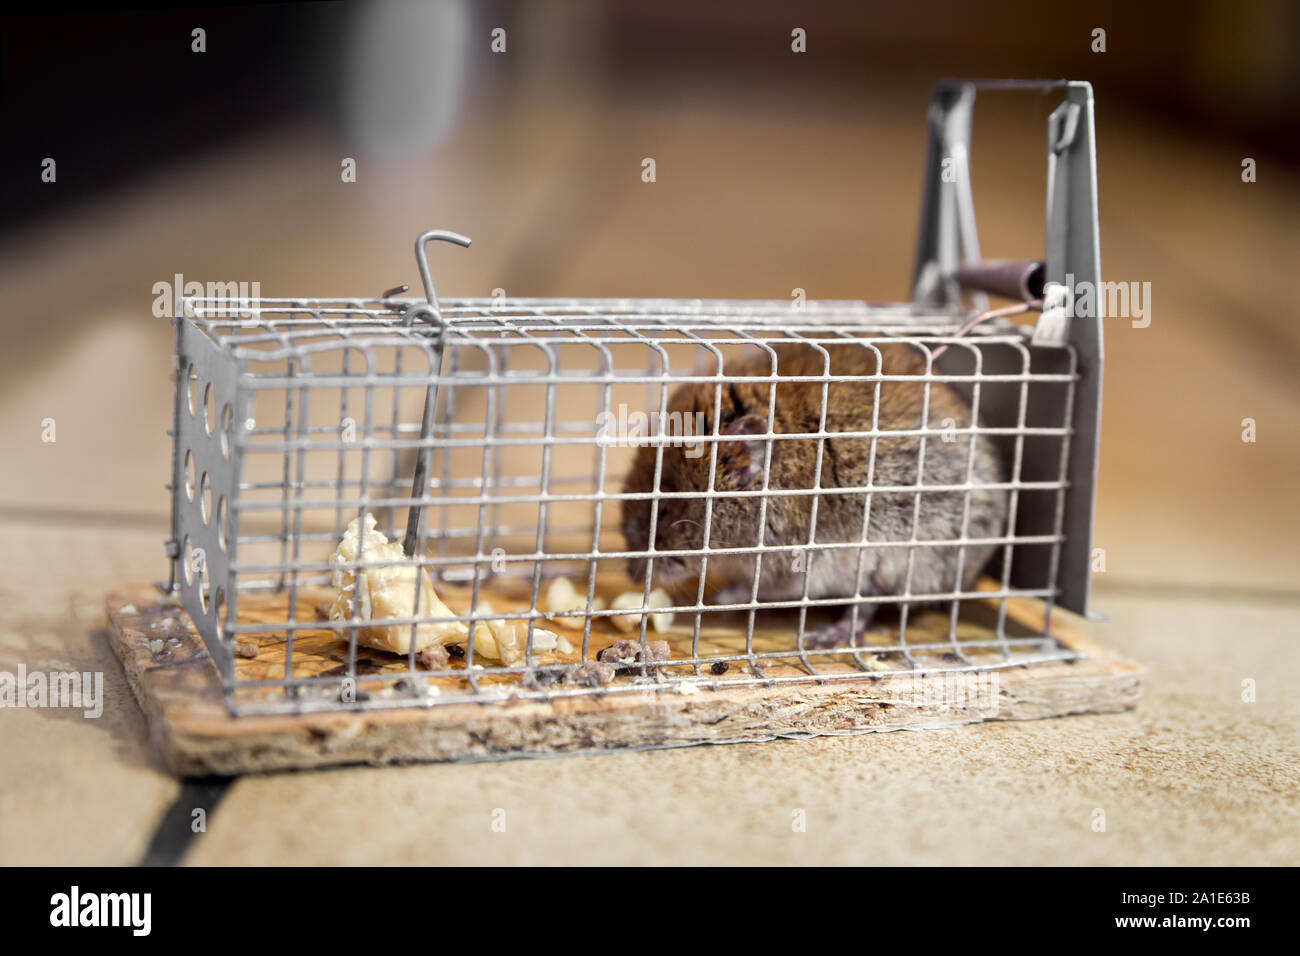 Maus ist in Mausefalle gefangen, Lebendfalle oder Kastenfalle in der Küche  Stock Photo